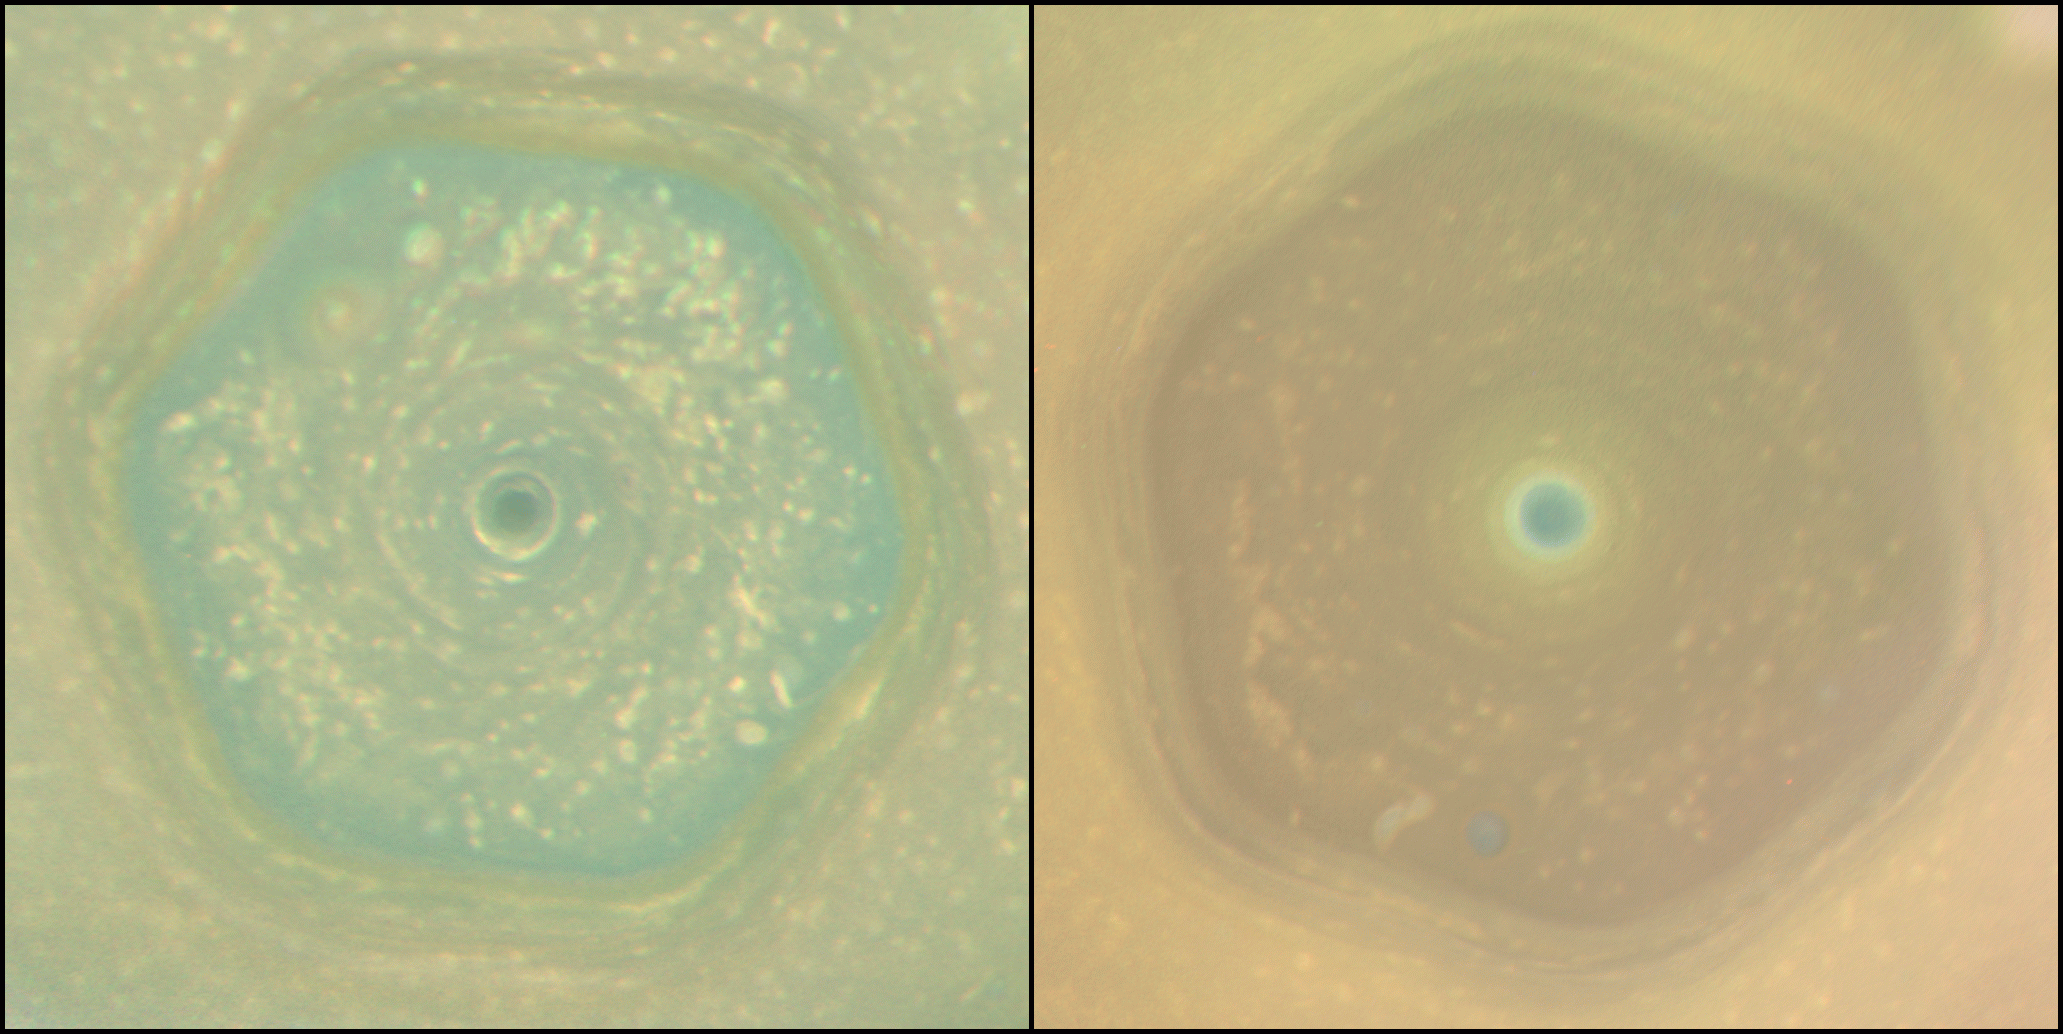 Шестиугольный ураган на северном полюсе Сатурна в 2013 и 2017 годах